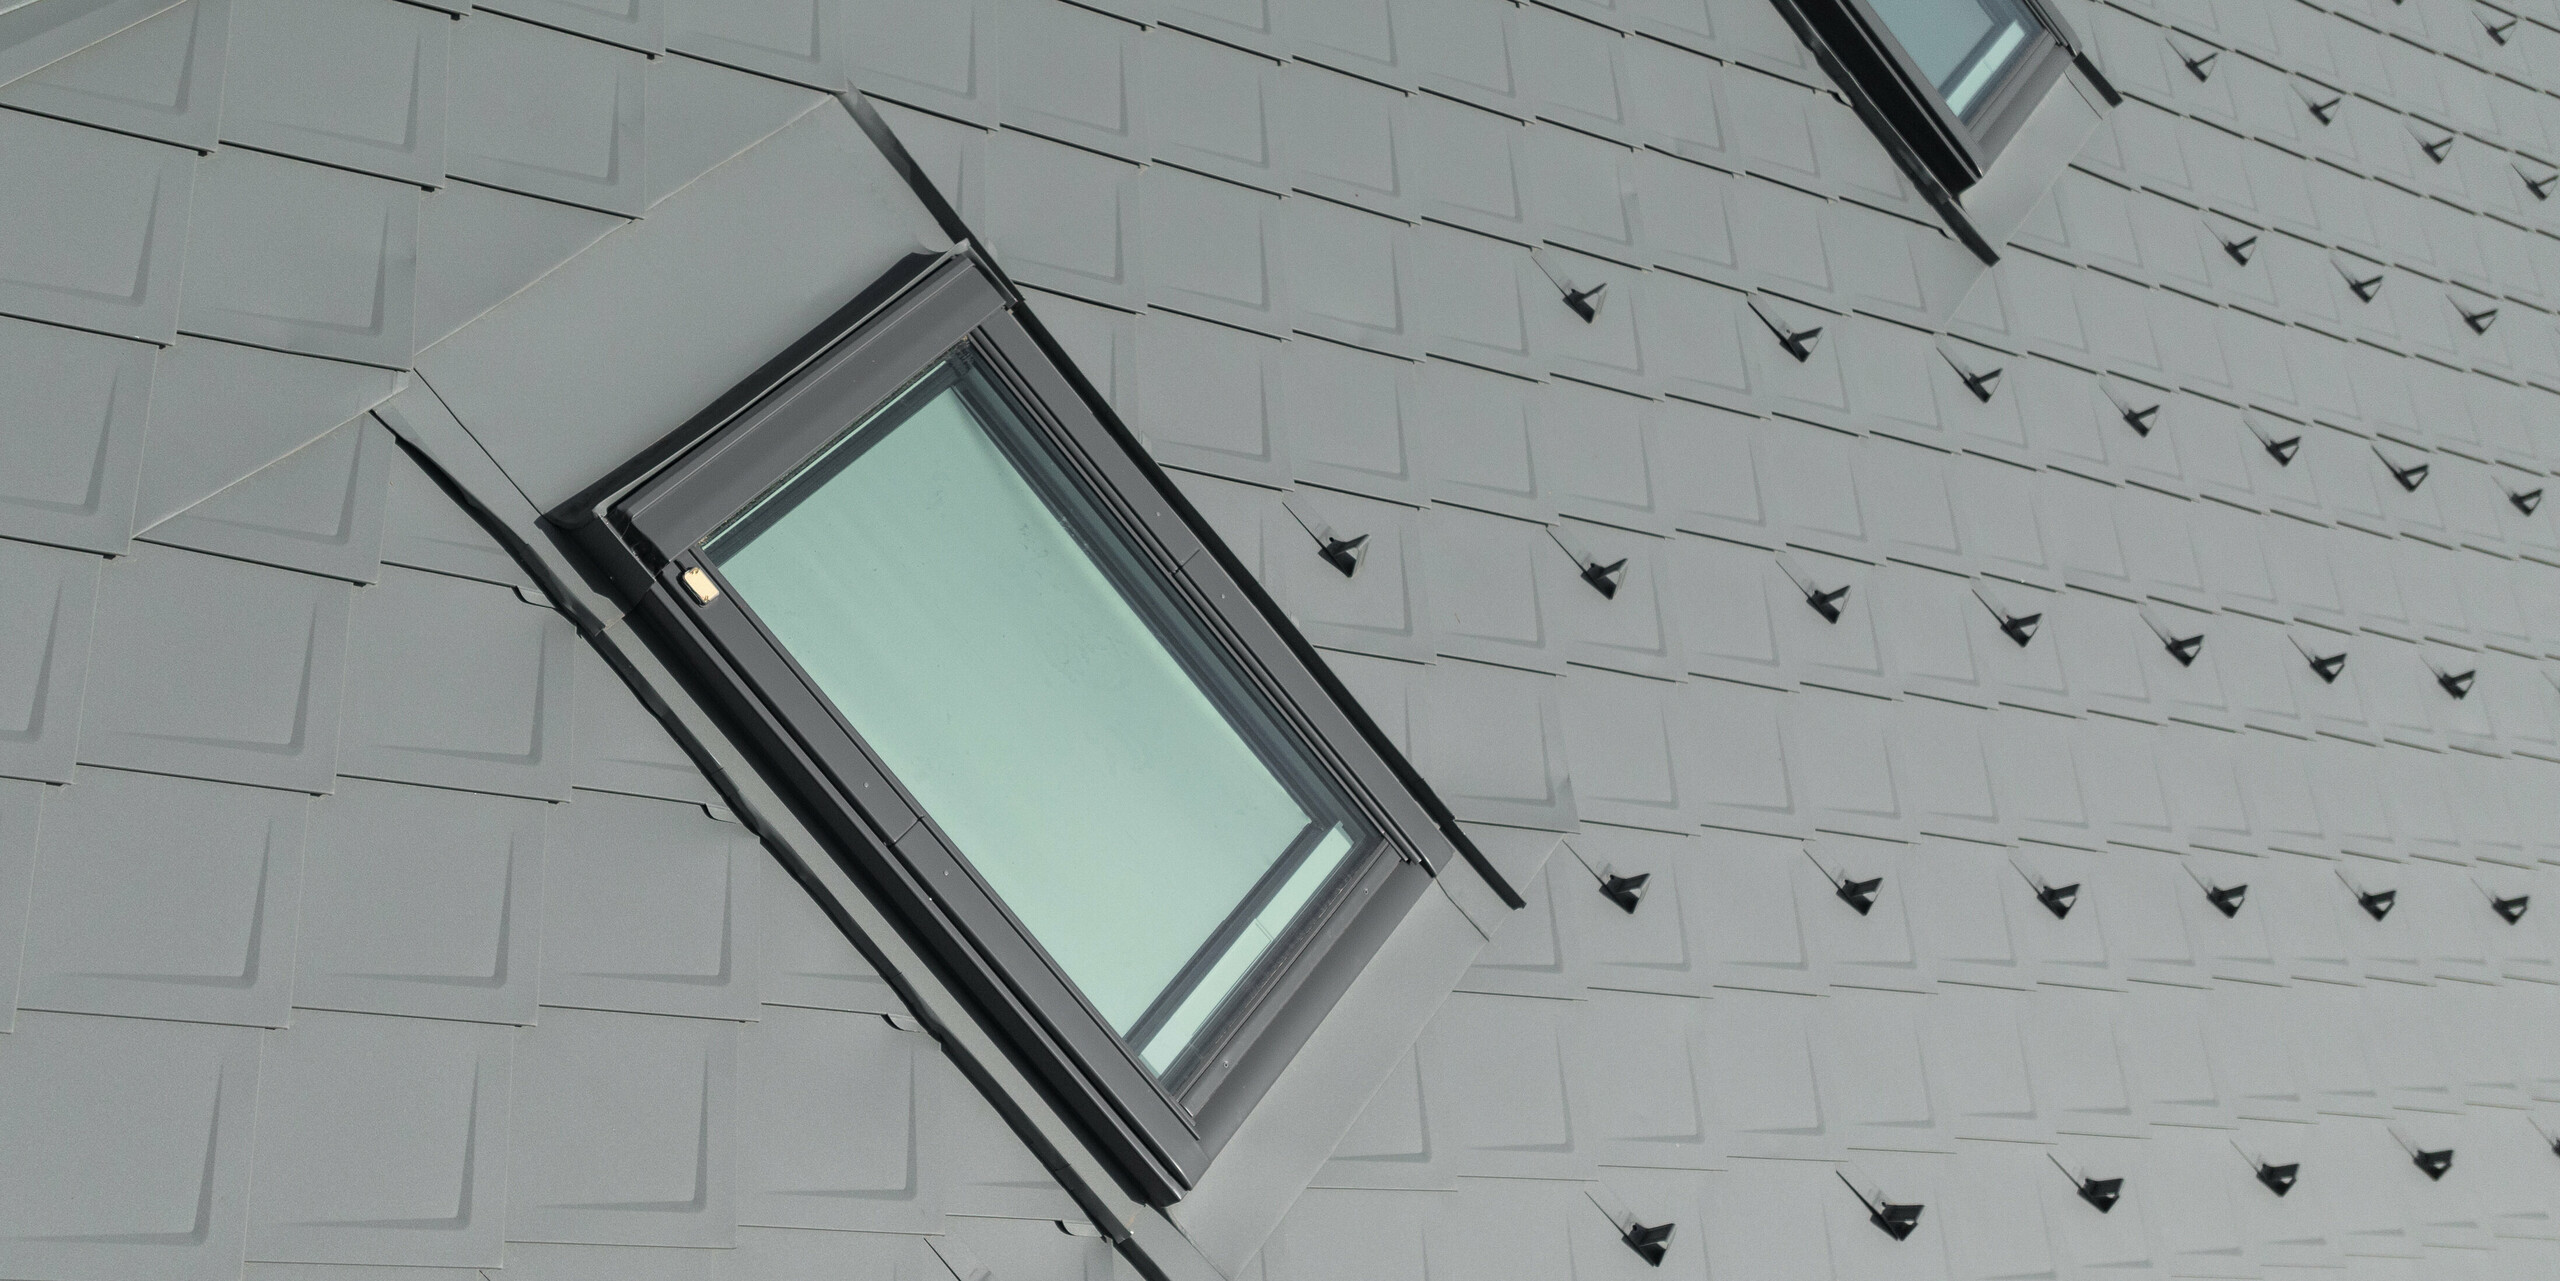 Detail lemování okna z PREFALZ. Lemování nenápadně přechází na pravidelné řady falcovaných šablon 29 x 29 vybavených protisněhovými prvky ve formě sněhových háků. Vše v barvě P. 10 světle šedé.